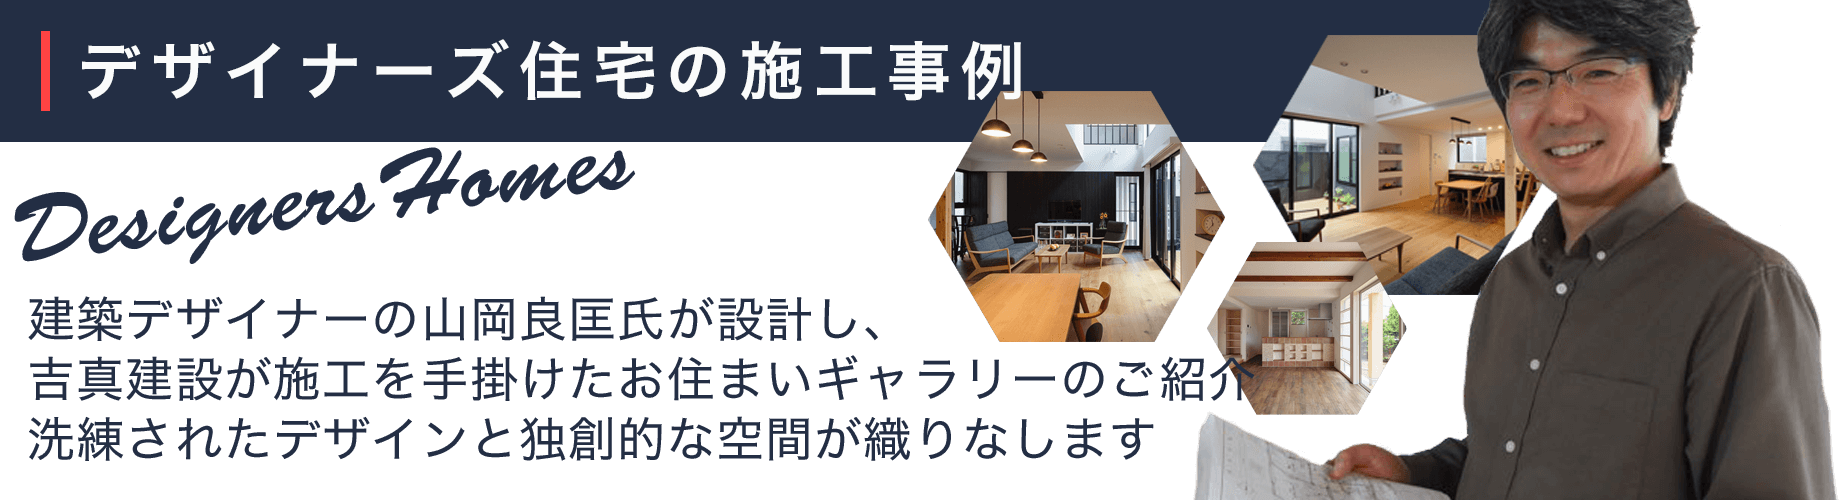 デザイナー住宅の施工事例。建築デザイナーの山岡良匡氏が設計し、吉真建設が施工を手掛けたお住まいのギャラリーです。洗練されたデザインとこだわりの空間が広がるデザイナーズ住宅。個性豊かなお住まいは、どれも必見です